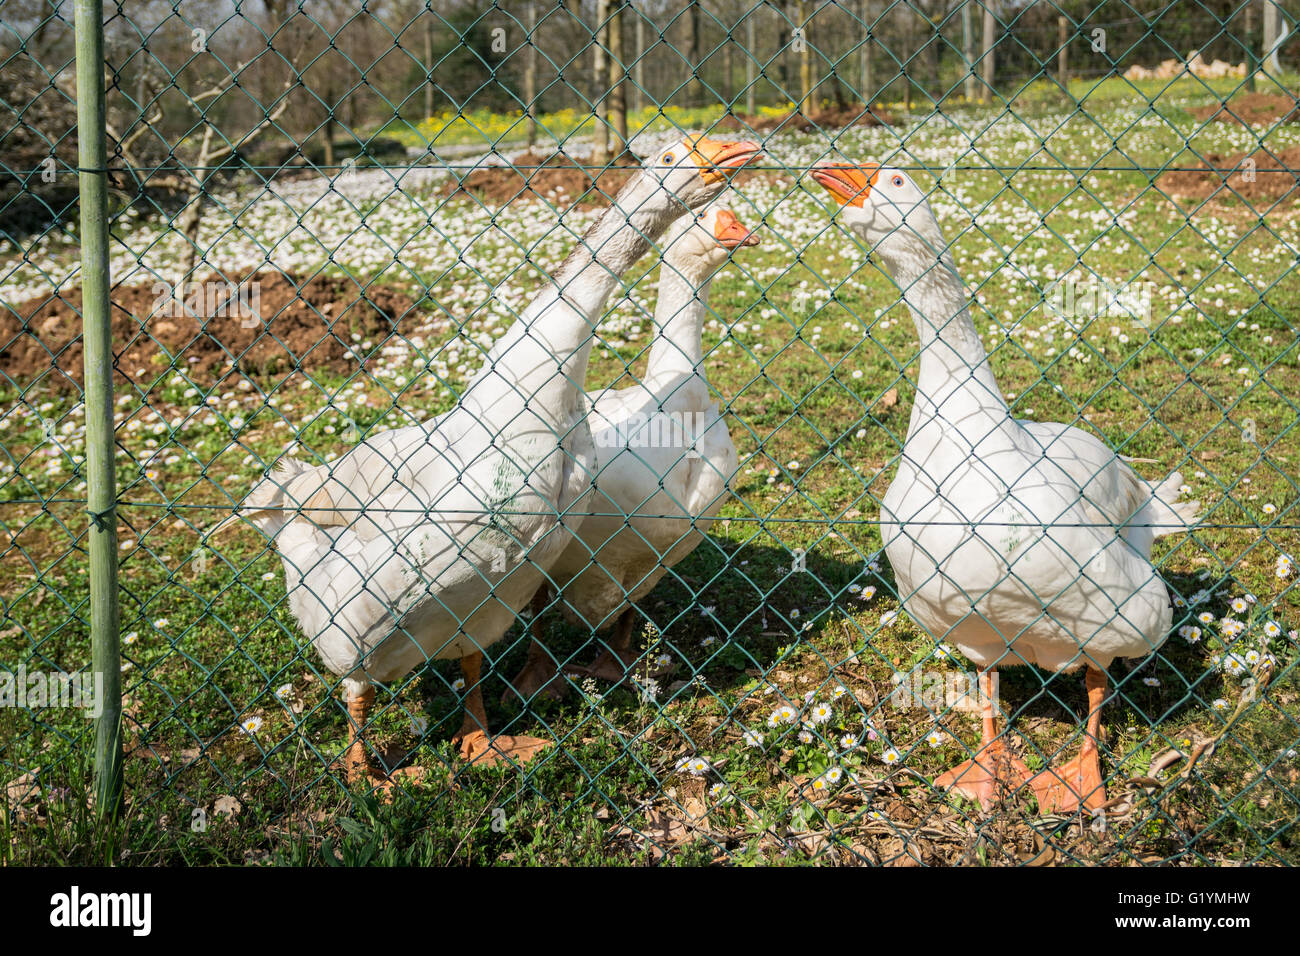 Tres gansos blancos observar curiosas detrás de una valla metálica. Foto de stock